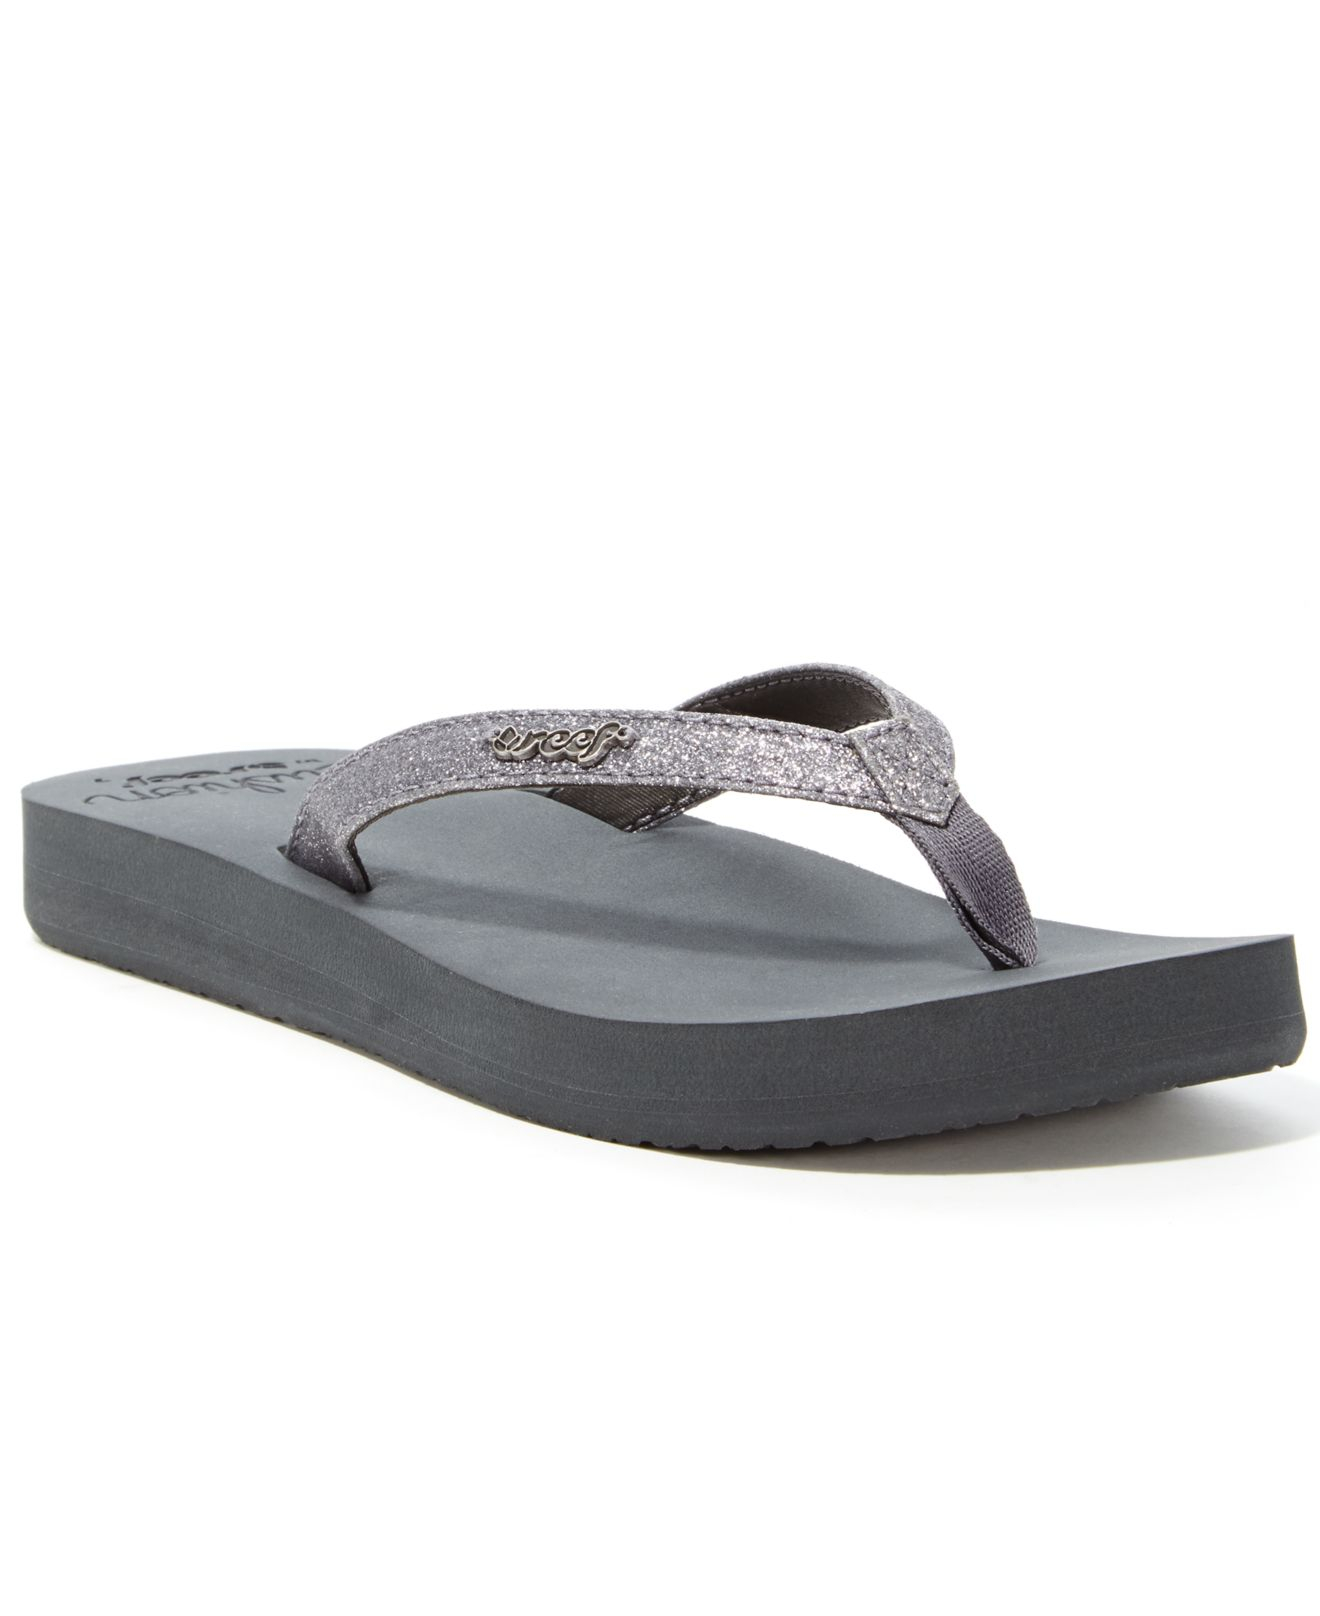 women's gray flip flops